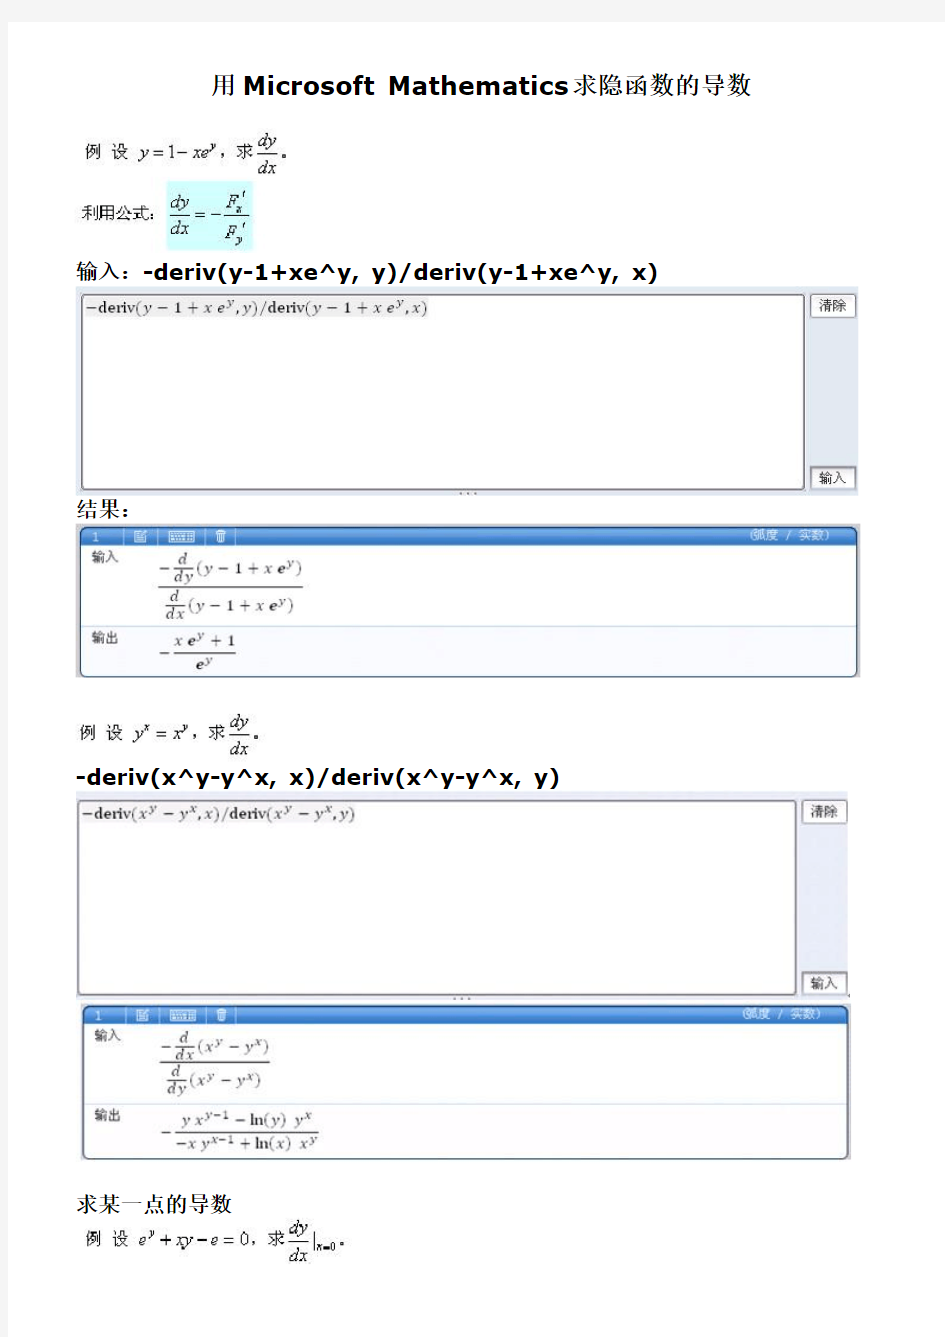 Microsoft Mathematics求隐函数的导数-微积分上的应用